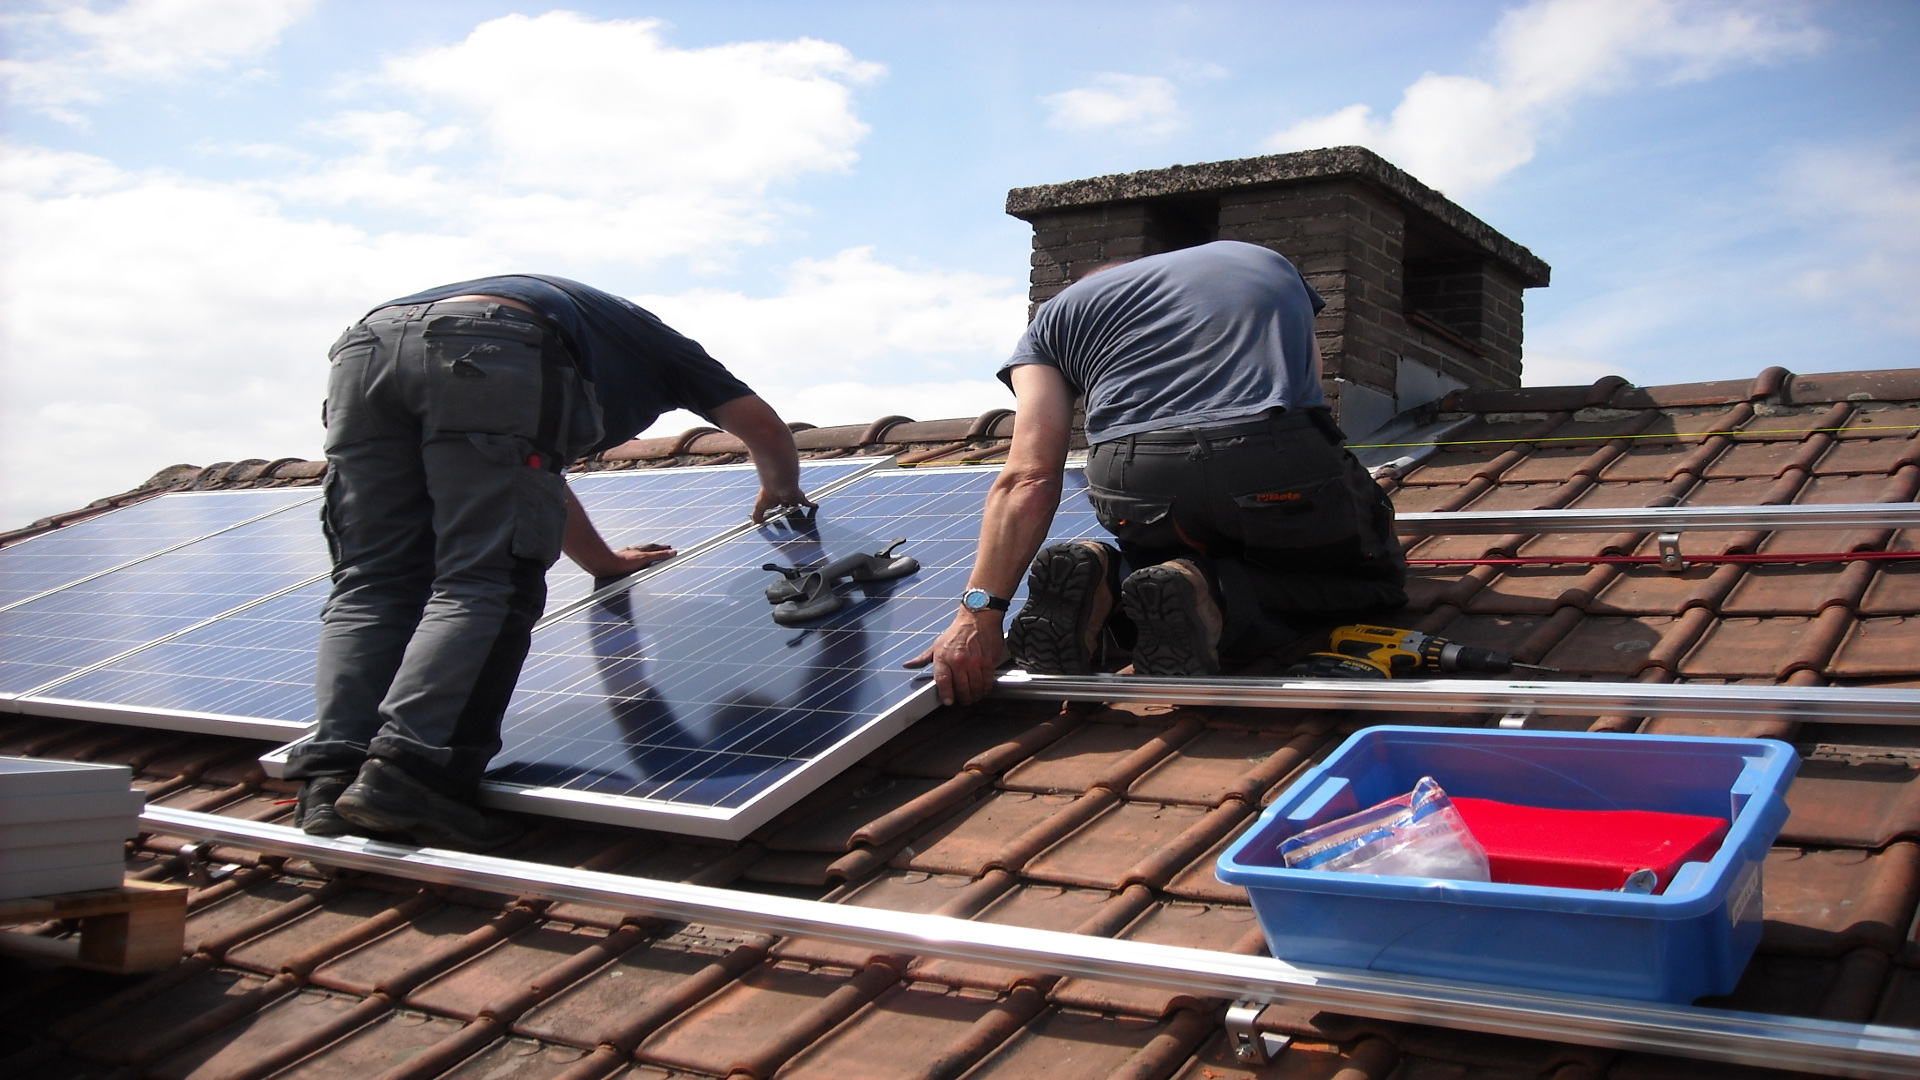 Las tejas solares que permiten que cada casa sea una central electrica1920